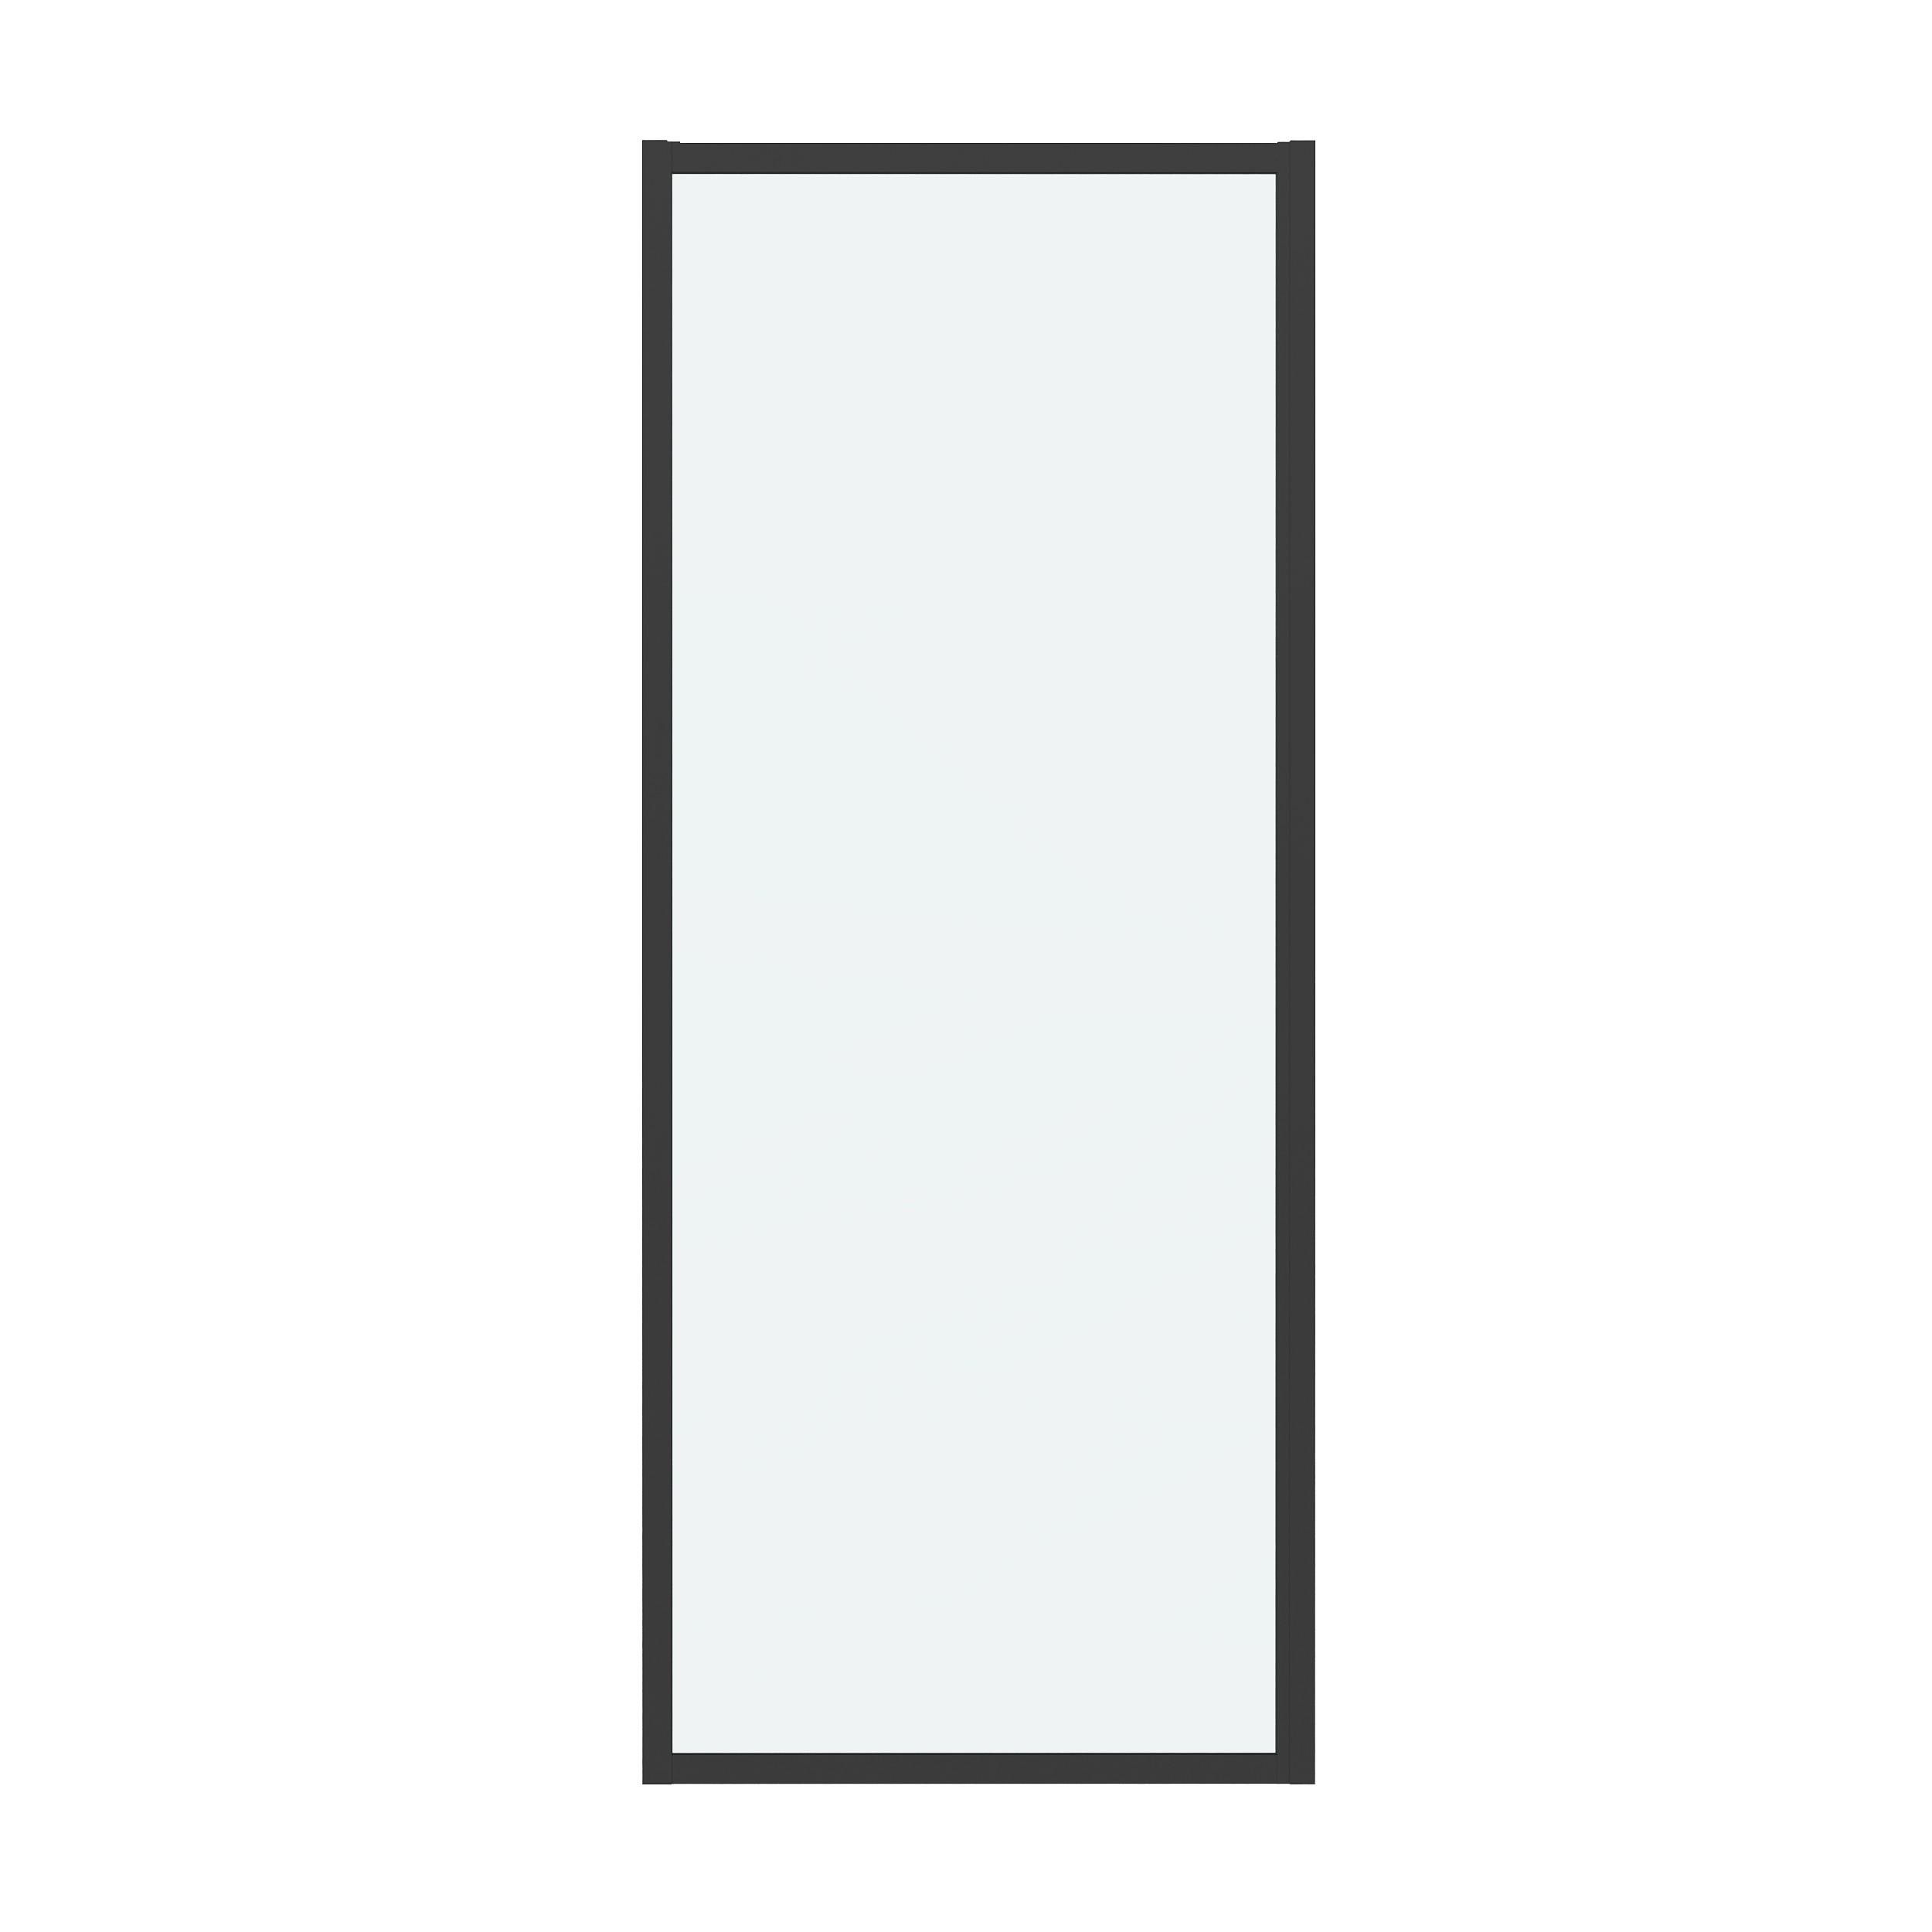 Боковая стенка Grossman Cosmo 90x195 200.K33.02.90.21.00 стекло прозрачное, профиль черный матовый